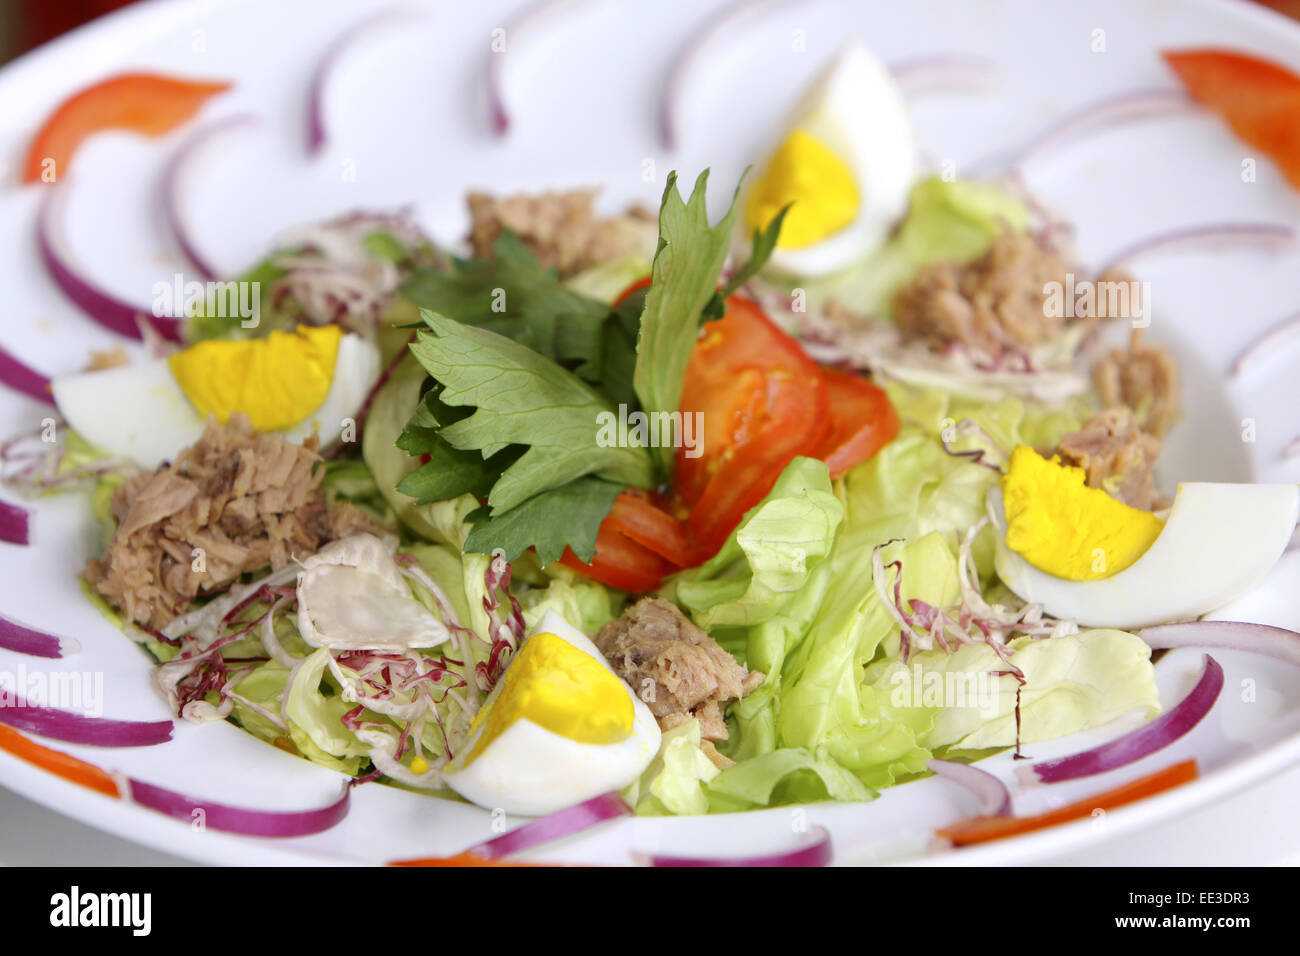 Ein Teller gemischter Salat, Speise, vegetarisch, Salat, Salatblaetter, Thunfisch, Ei, gekocht, Ernaehrung, gesund, gesundheitsb Banque D'Images